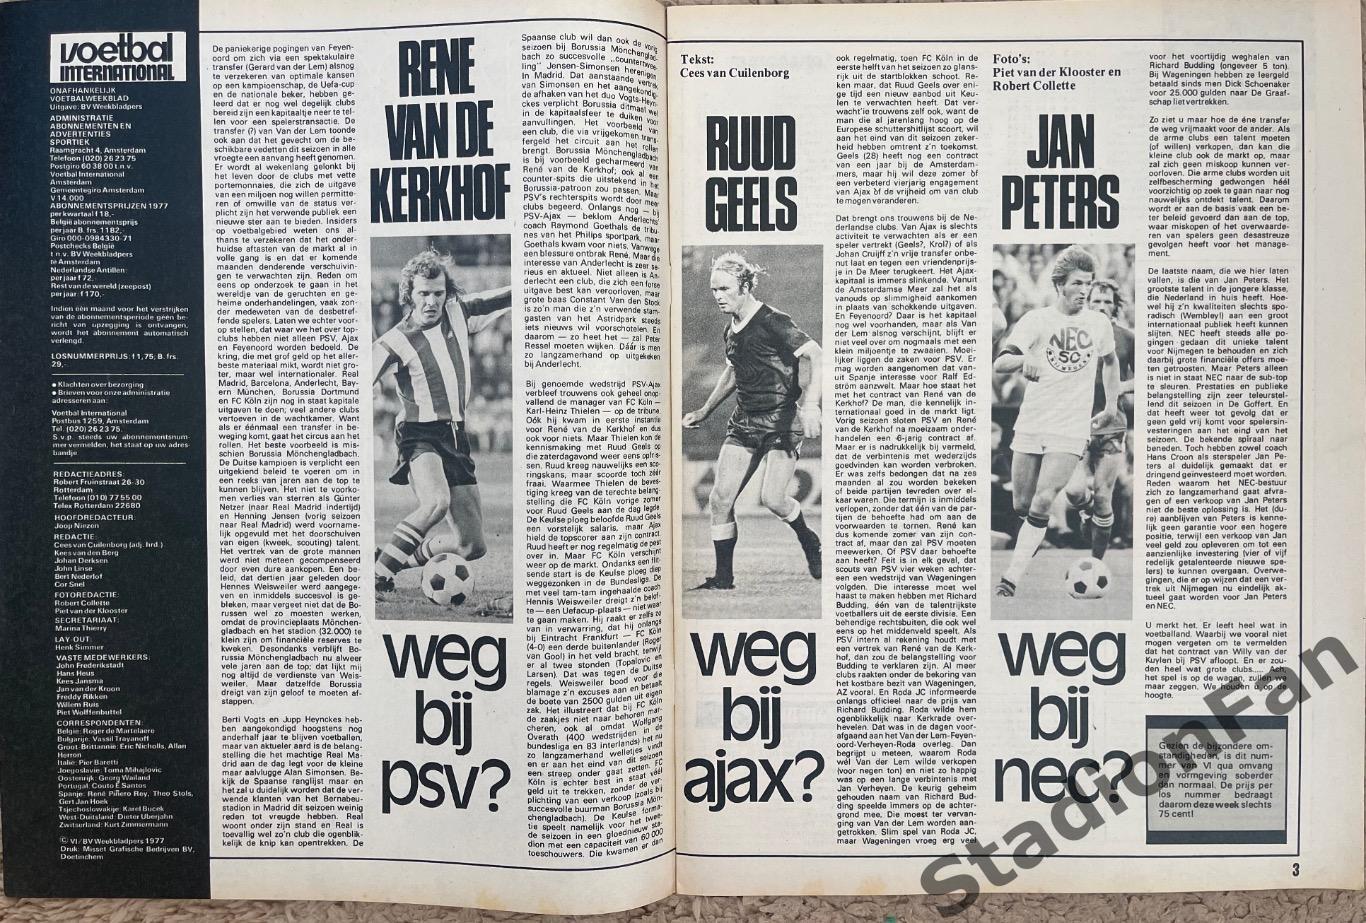 Журнал Voetbal nr.7 - 1977 год. 1